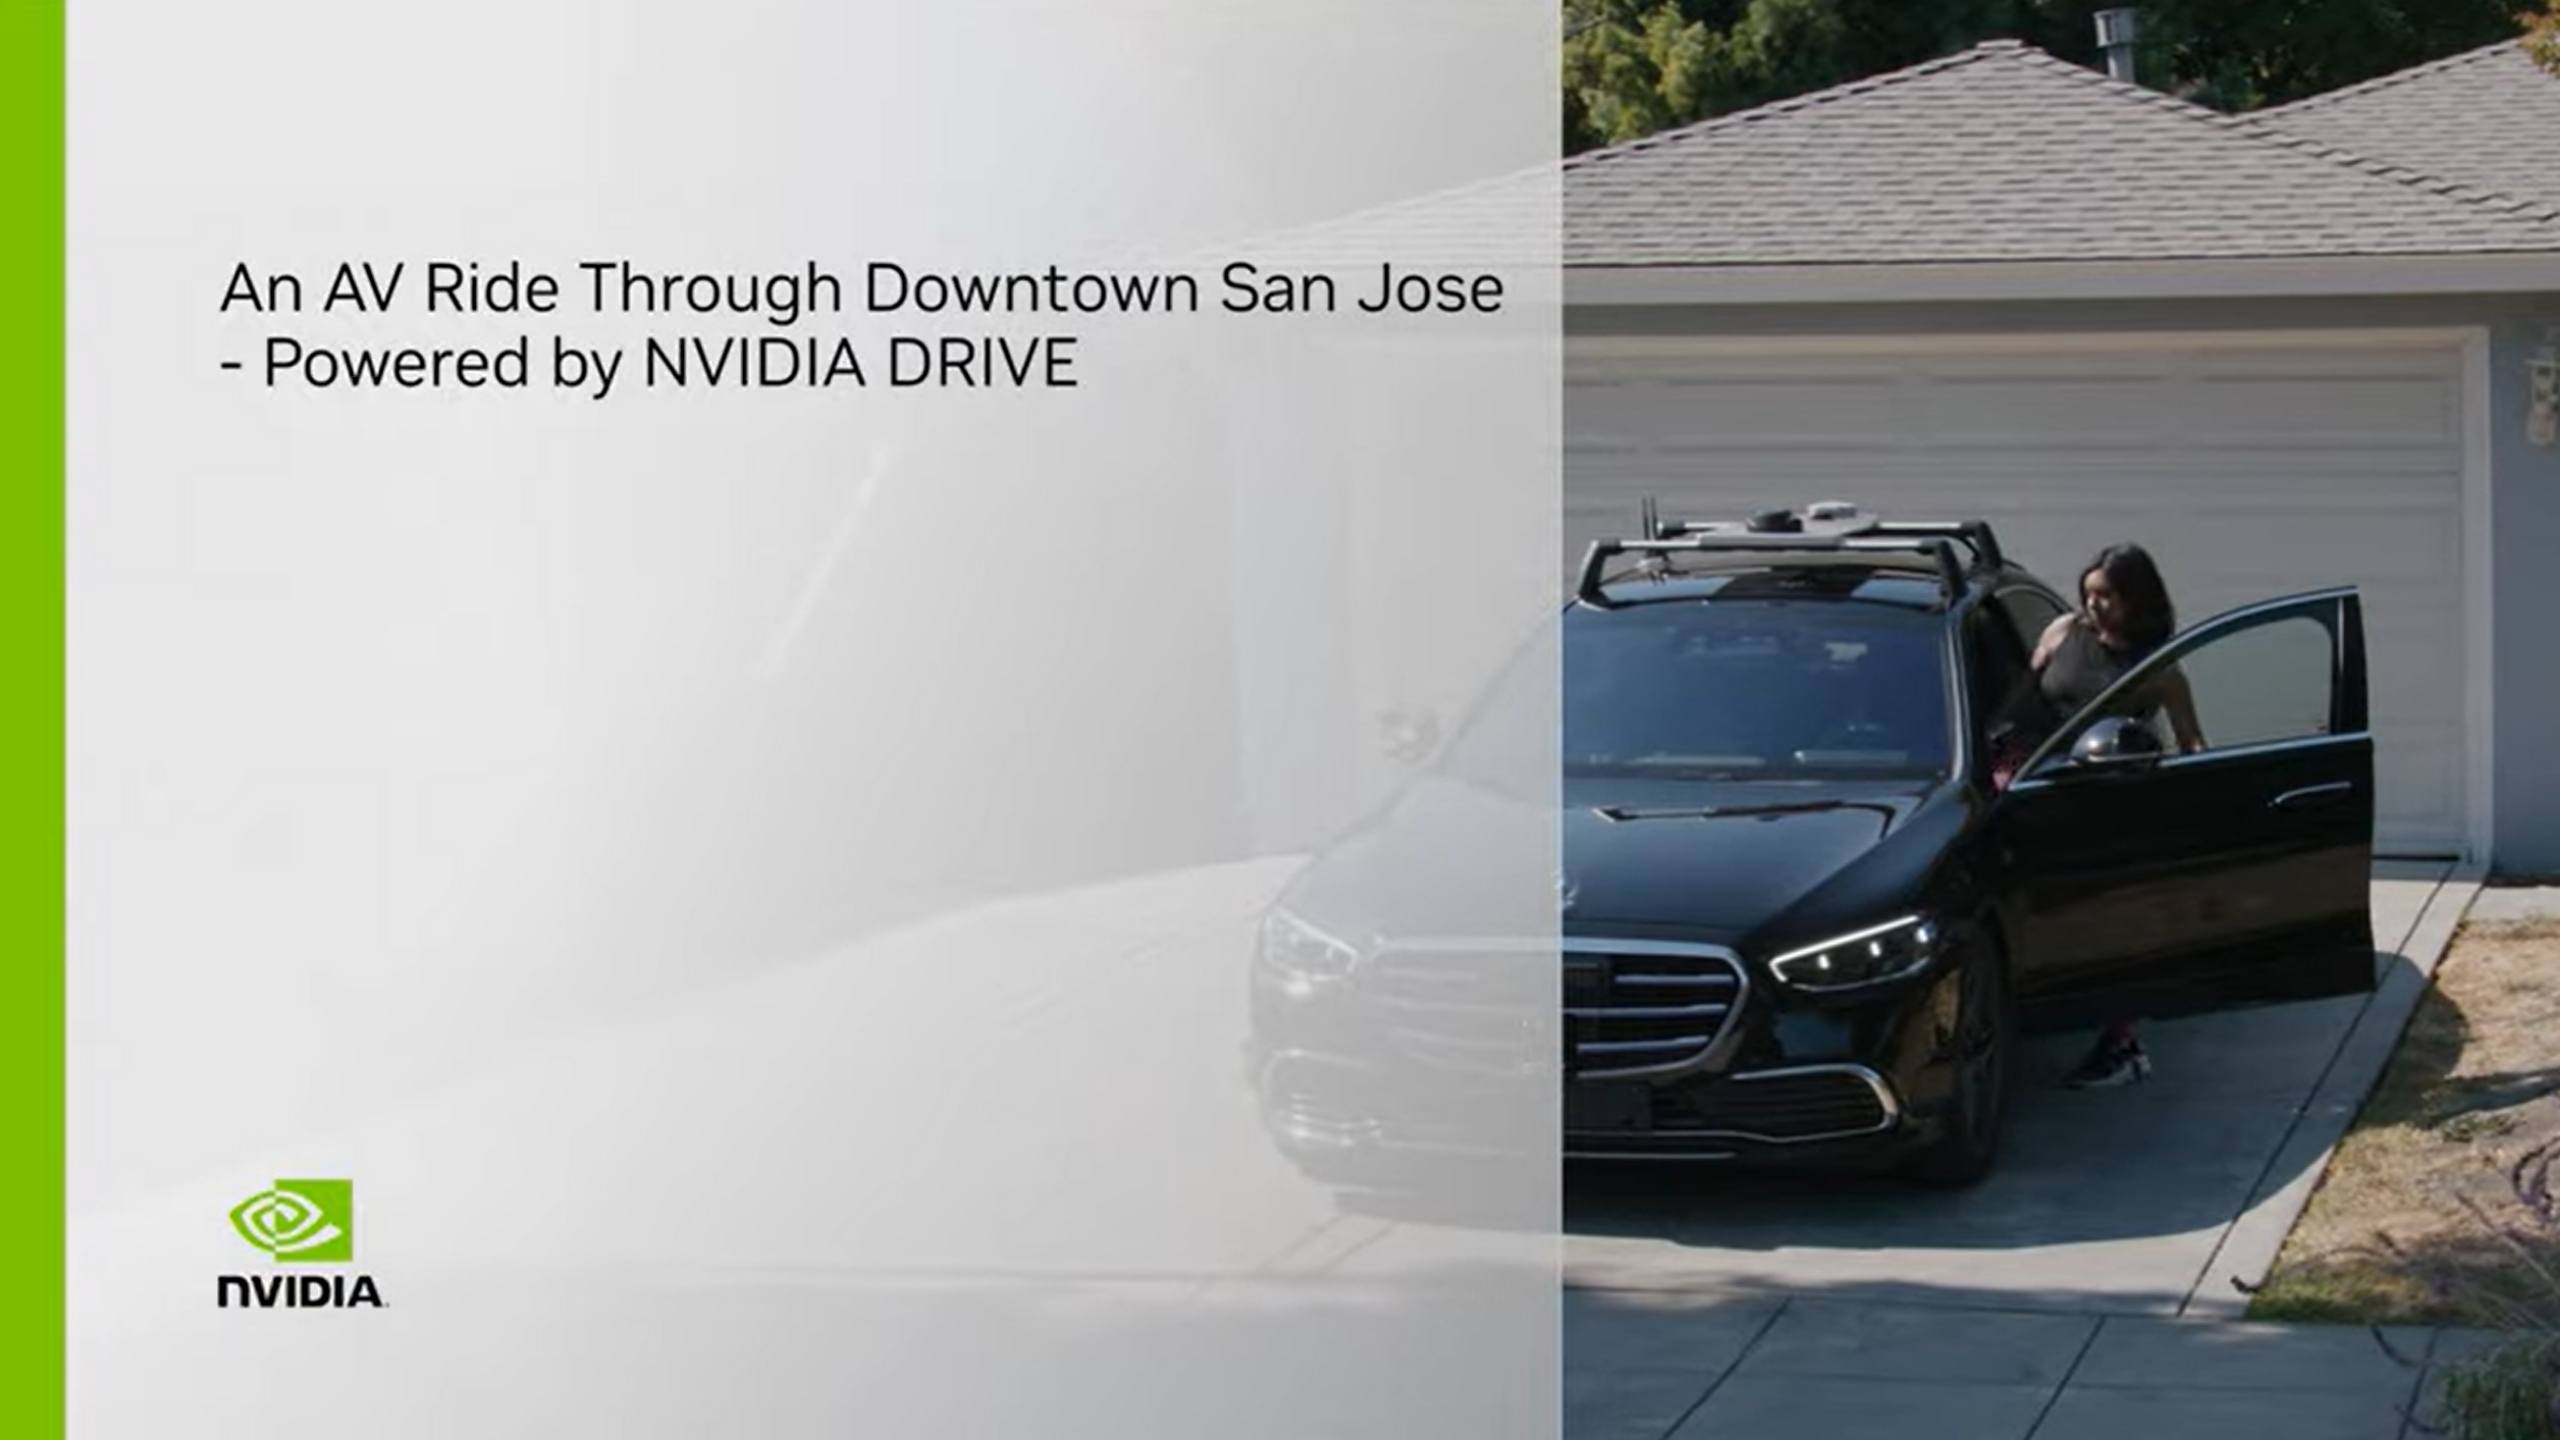 Um Passeio com AV pelo Centro de San Jose, com Tecnologia NVIDIA DRIVE